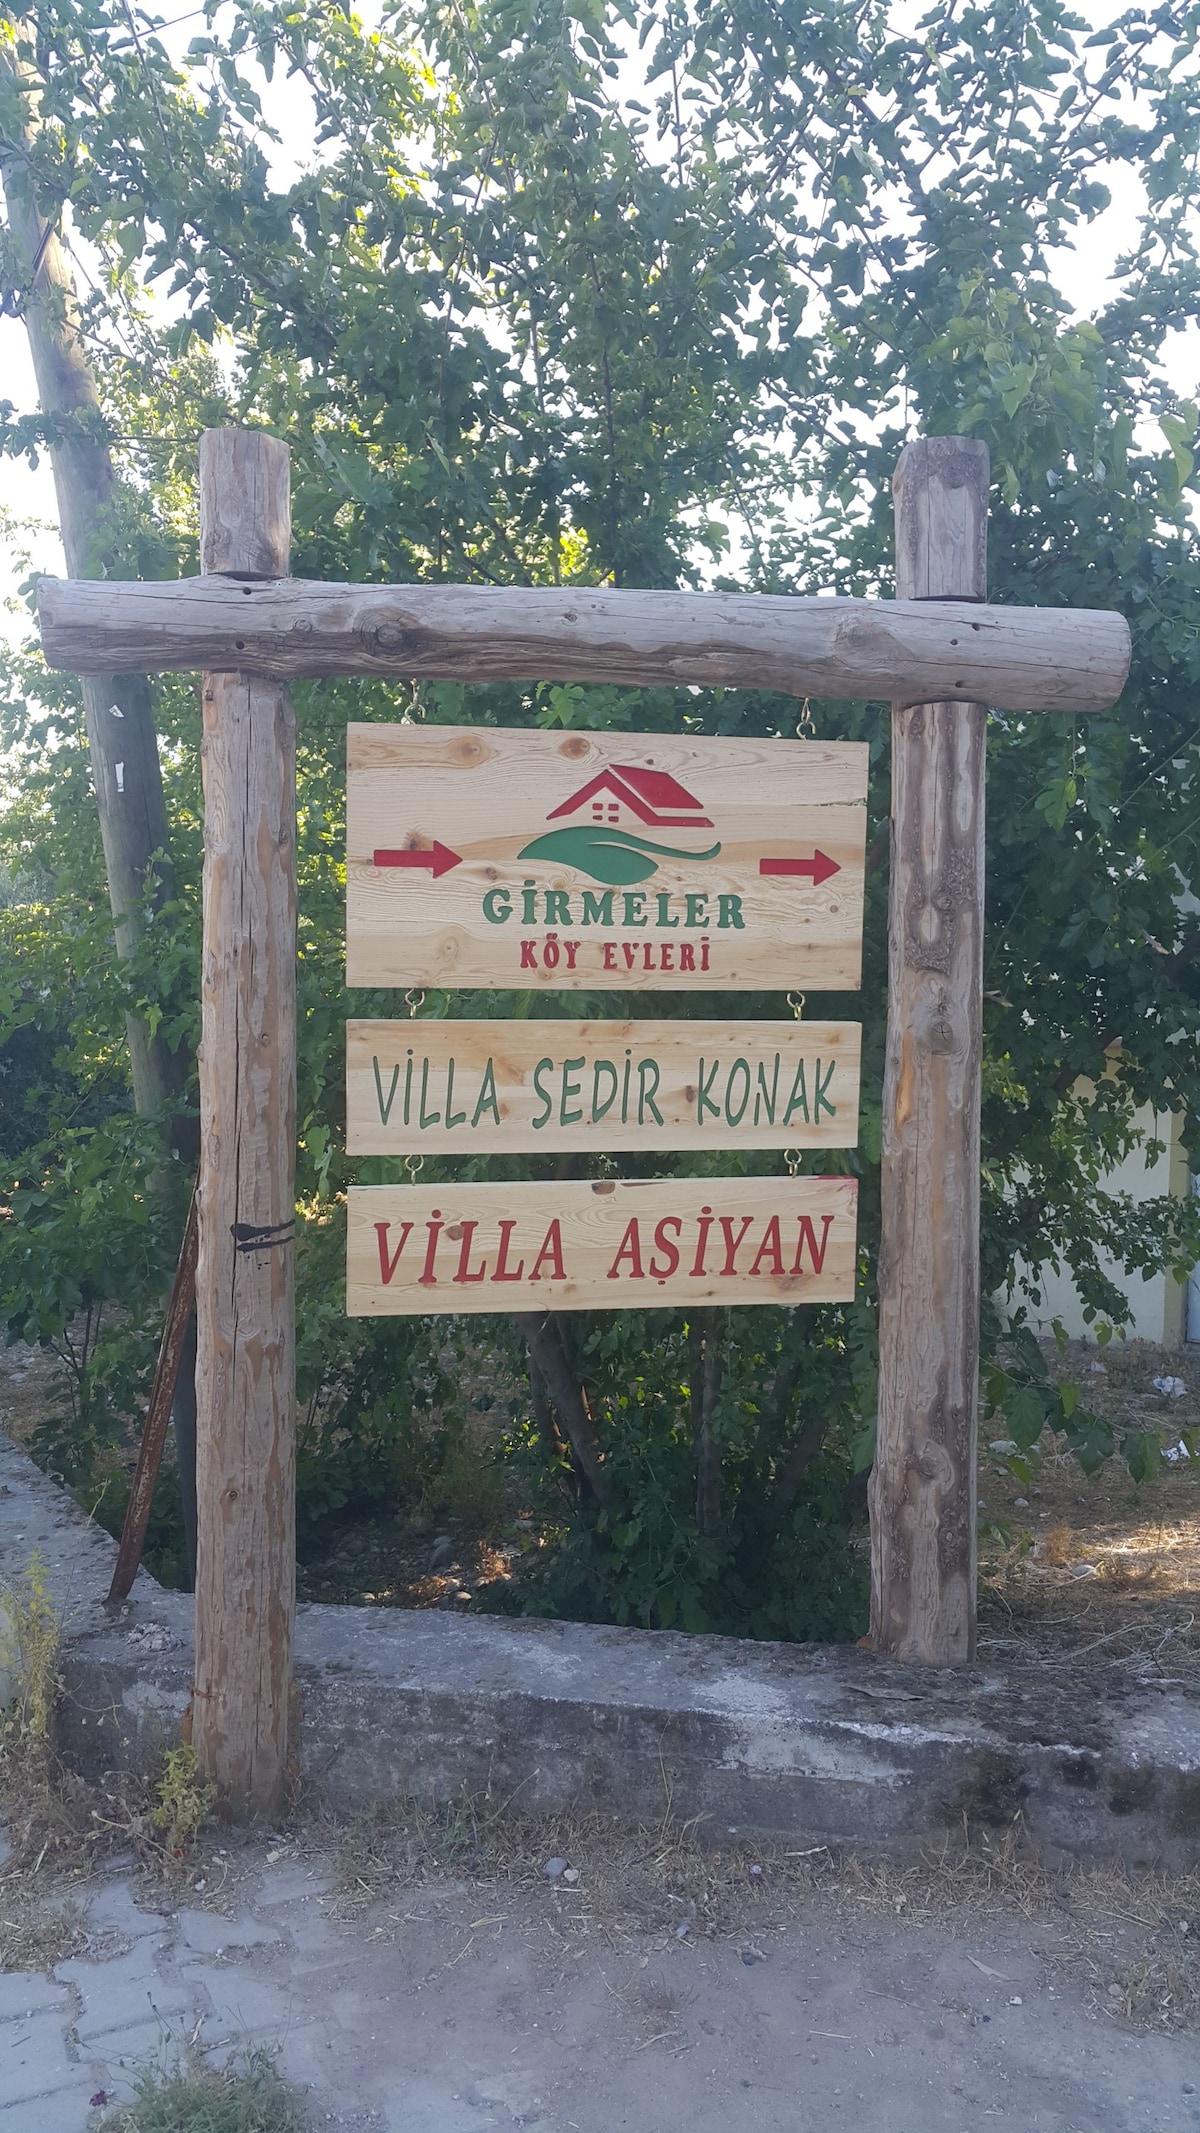 Villa Aşiyan(Girmeler Köy Evleri)